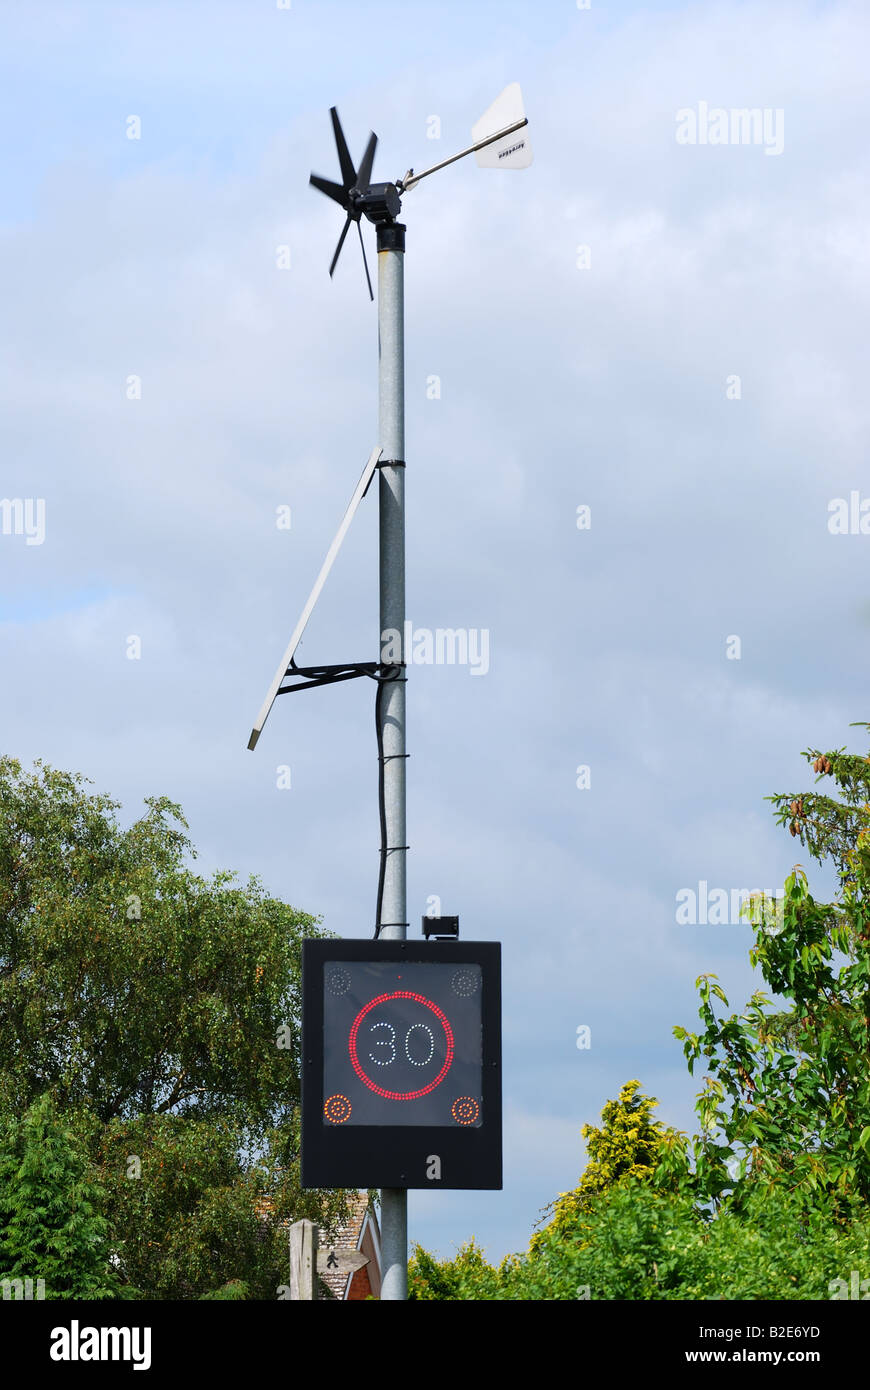 Indicador de velocidad en carretera con turbina de viento y paneles solares, A46 road, Warwickshire, Inglaterra, Reino Unido Foto de stock